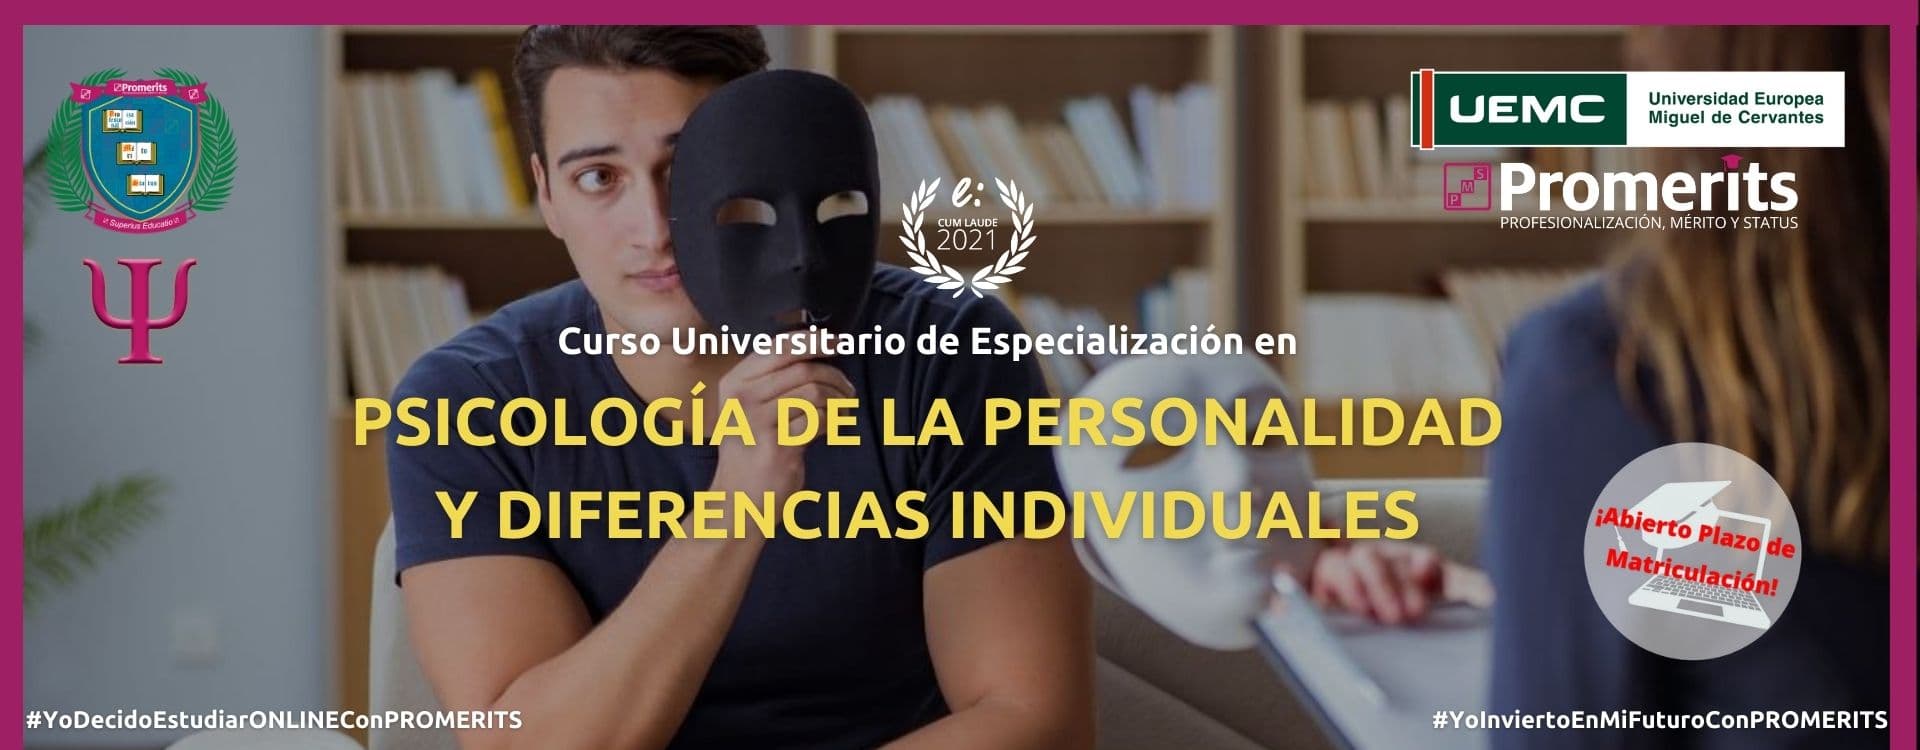 Curso Universitario de Especialización en Psicología de la Personalidad y Diferencias Individuales